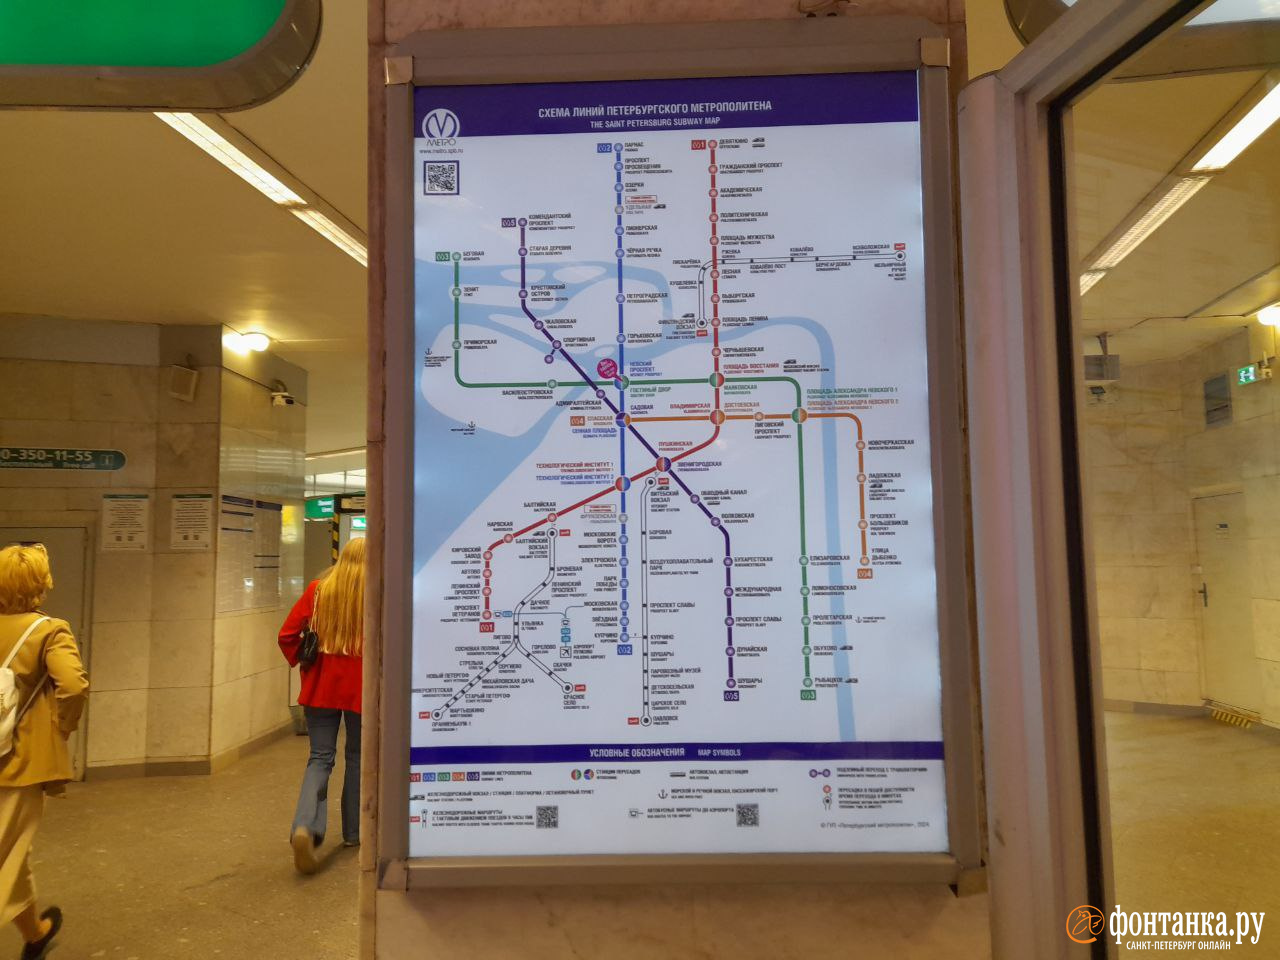 В Петербурге развесили новую схему метро. Дело не только в «Чернышевской»